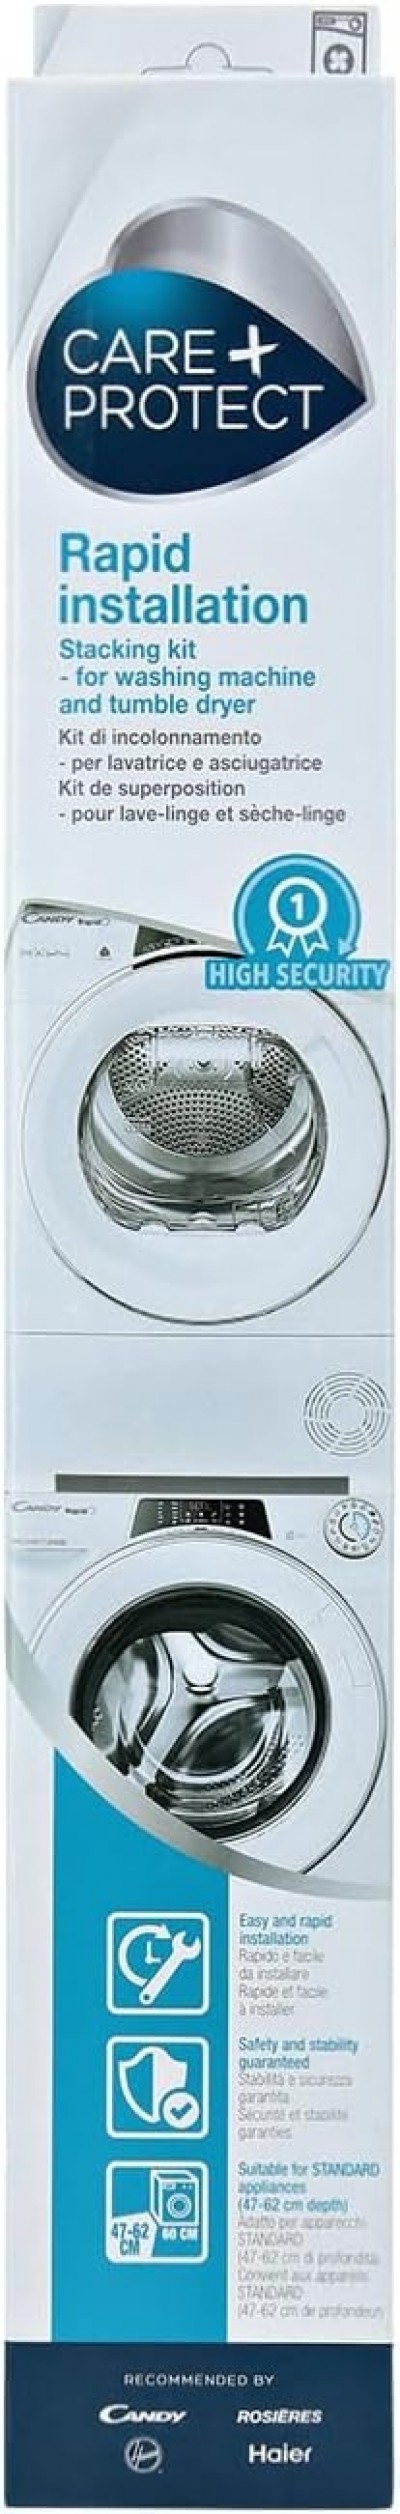 Kit di Incolonnamento per Lavatrice e Asciugatrice Slim adatto per lavatrici con profondità 47-60 cm Candy Hoover Baumatic  Zerowatt CARE+PROTECT WSK1101/2